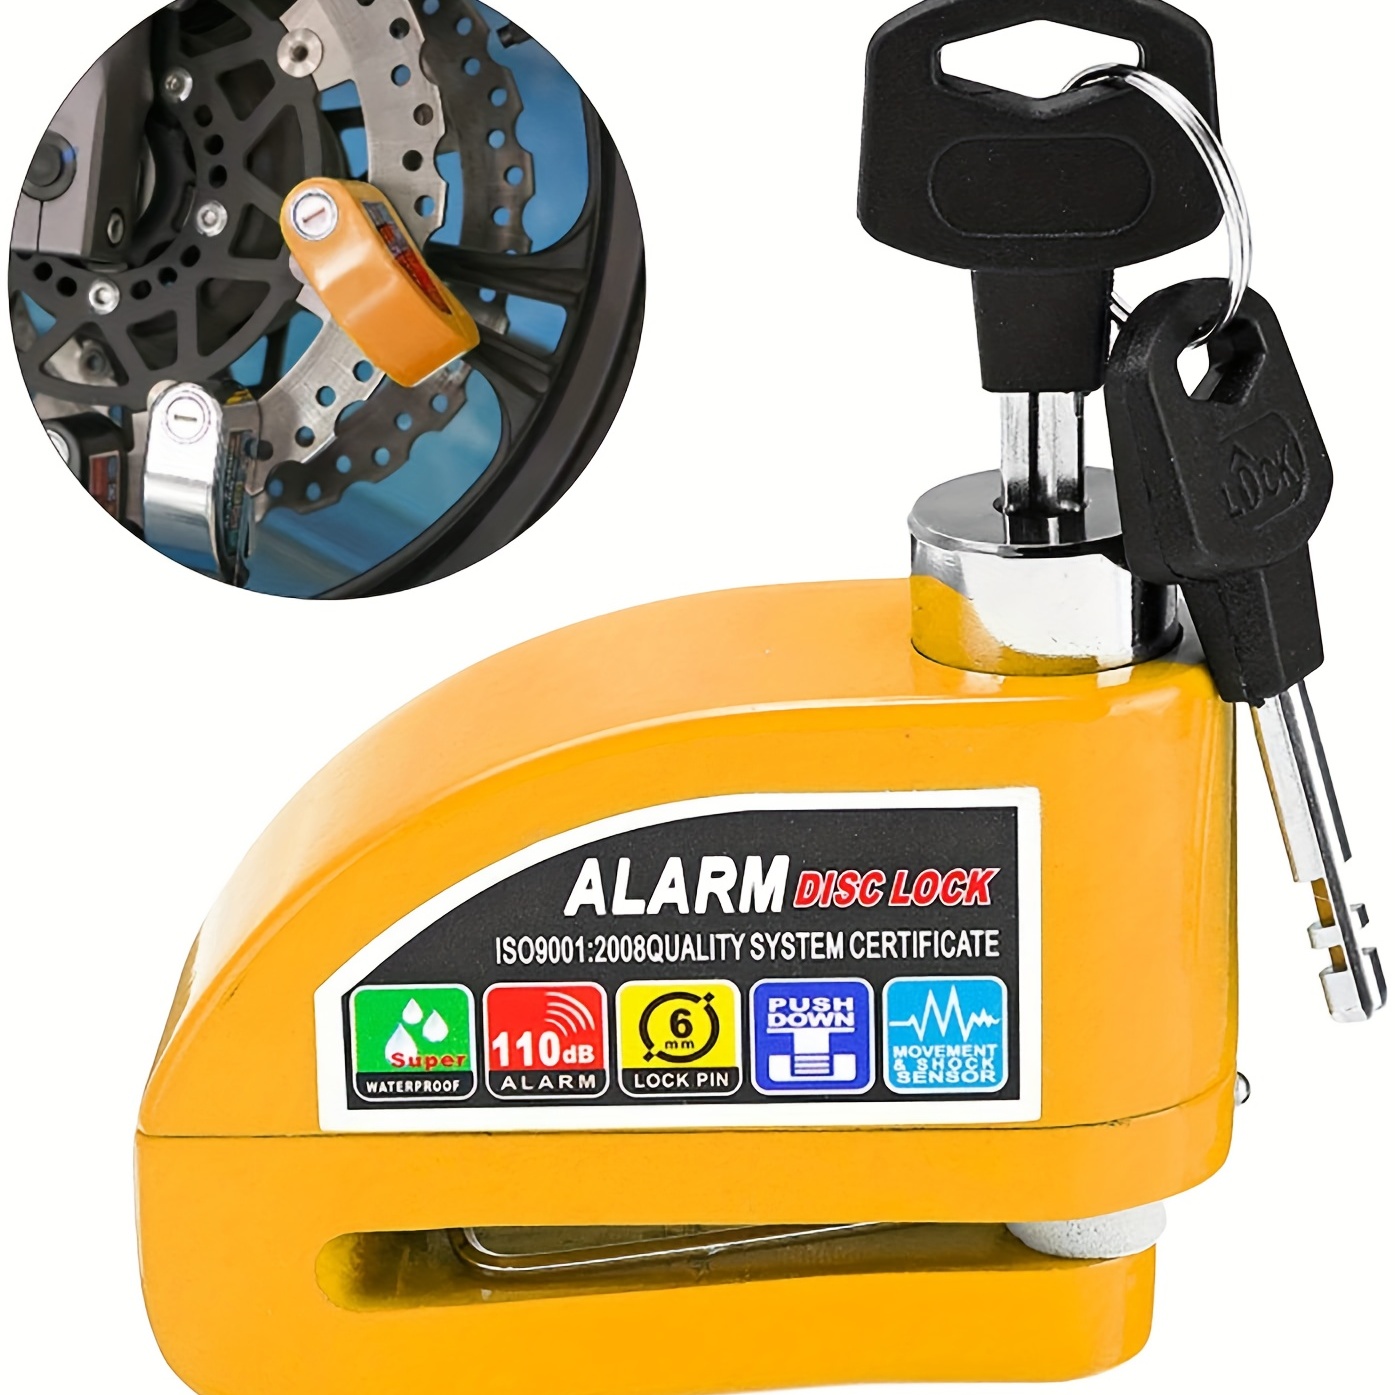 Candado con Alarma para Bicicletas y Motos con sistema Puertas Alarm Lock 